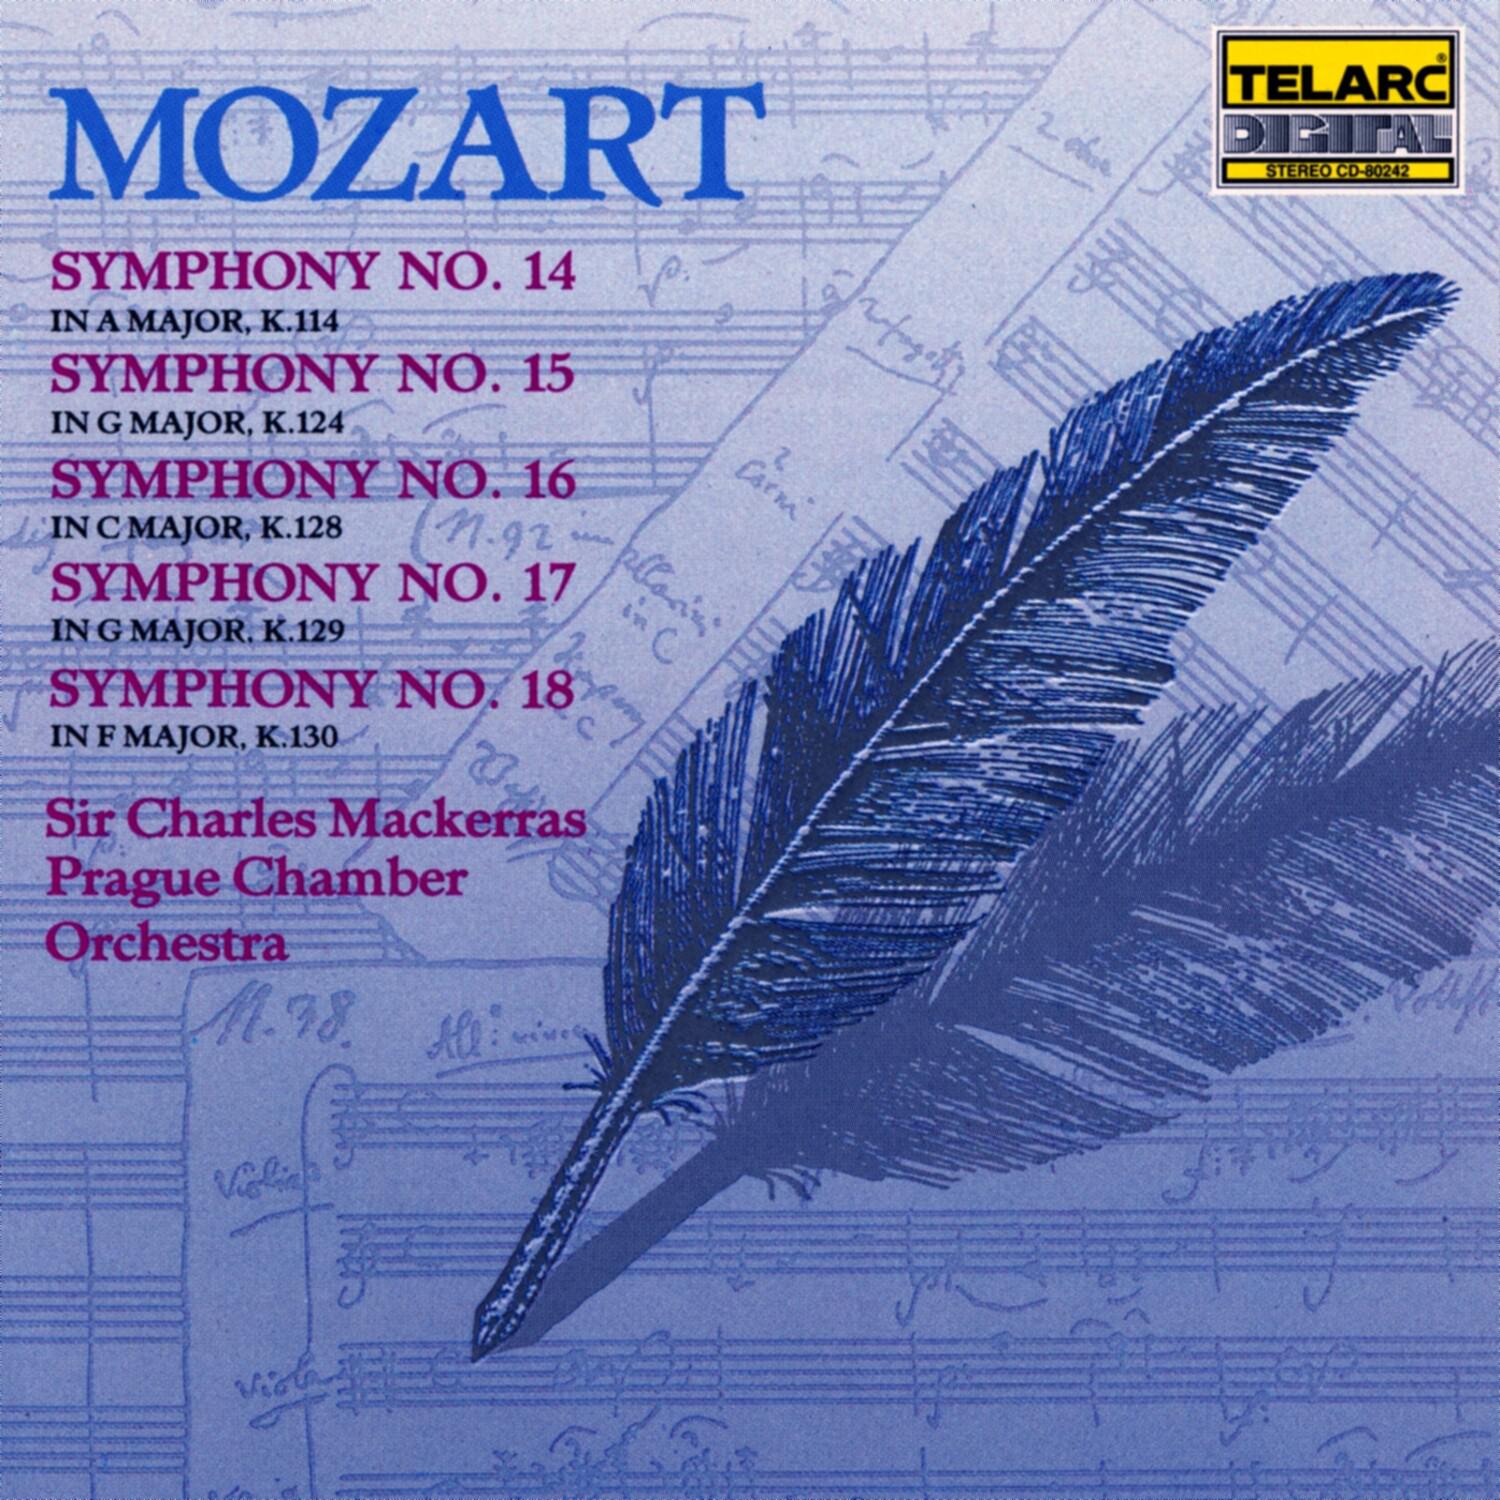 Symphony No. 14 in A major, K.114: IV. Molto allegro